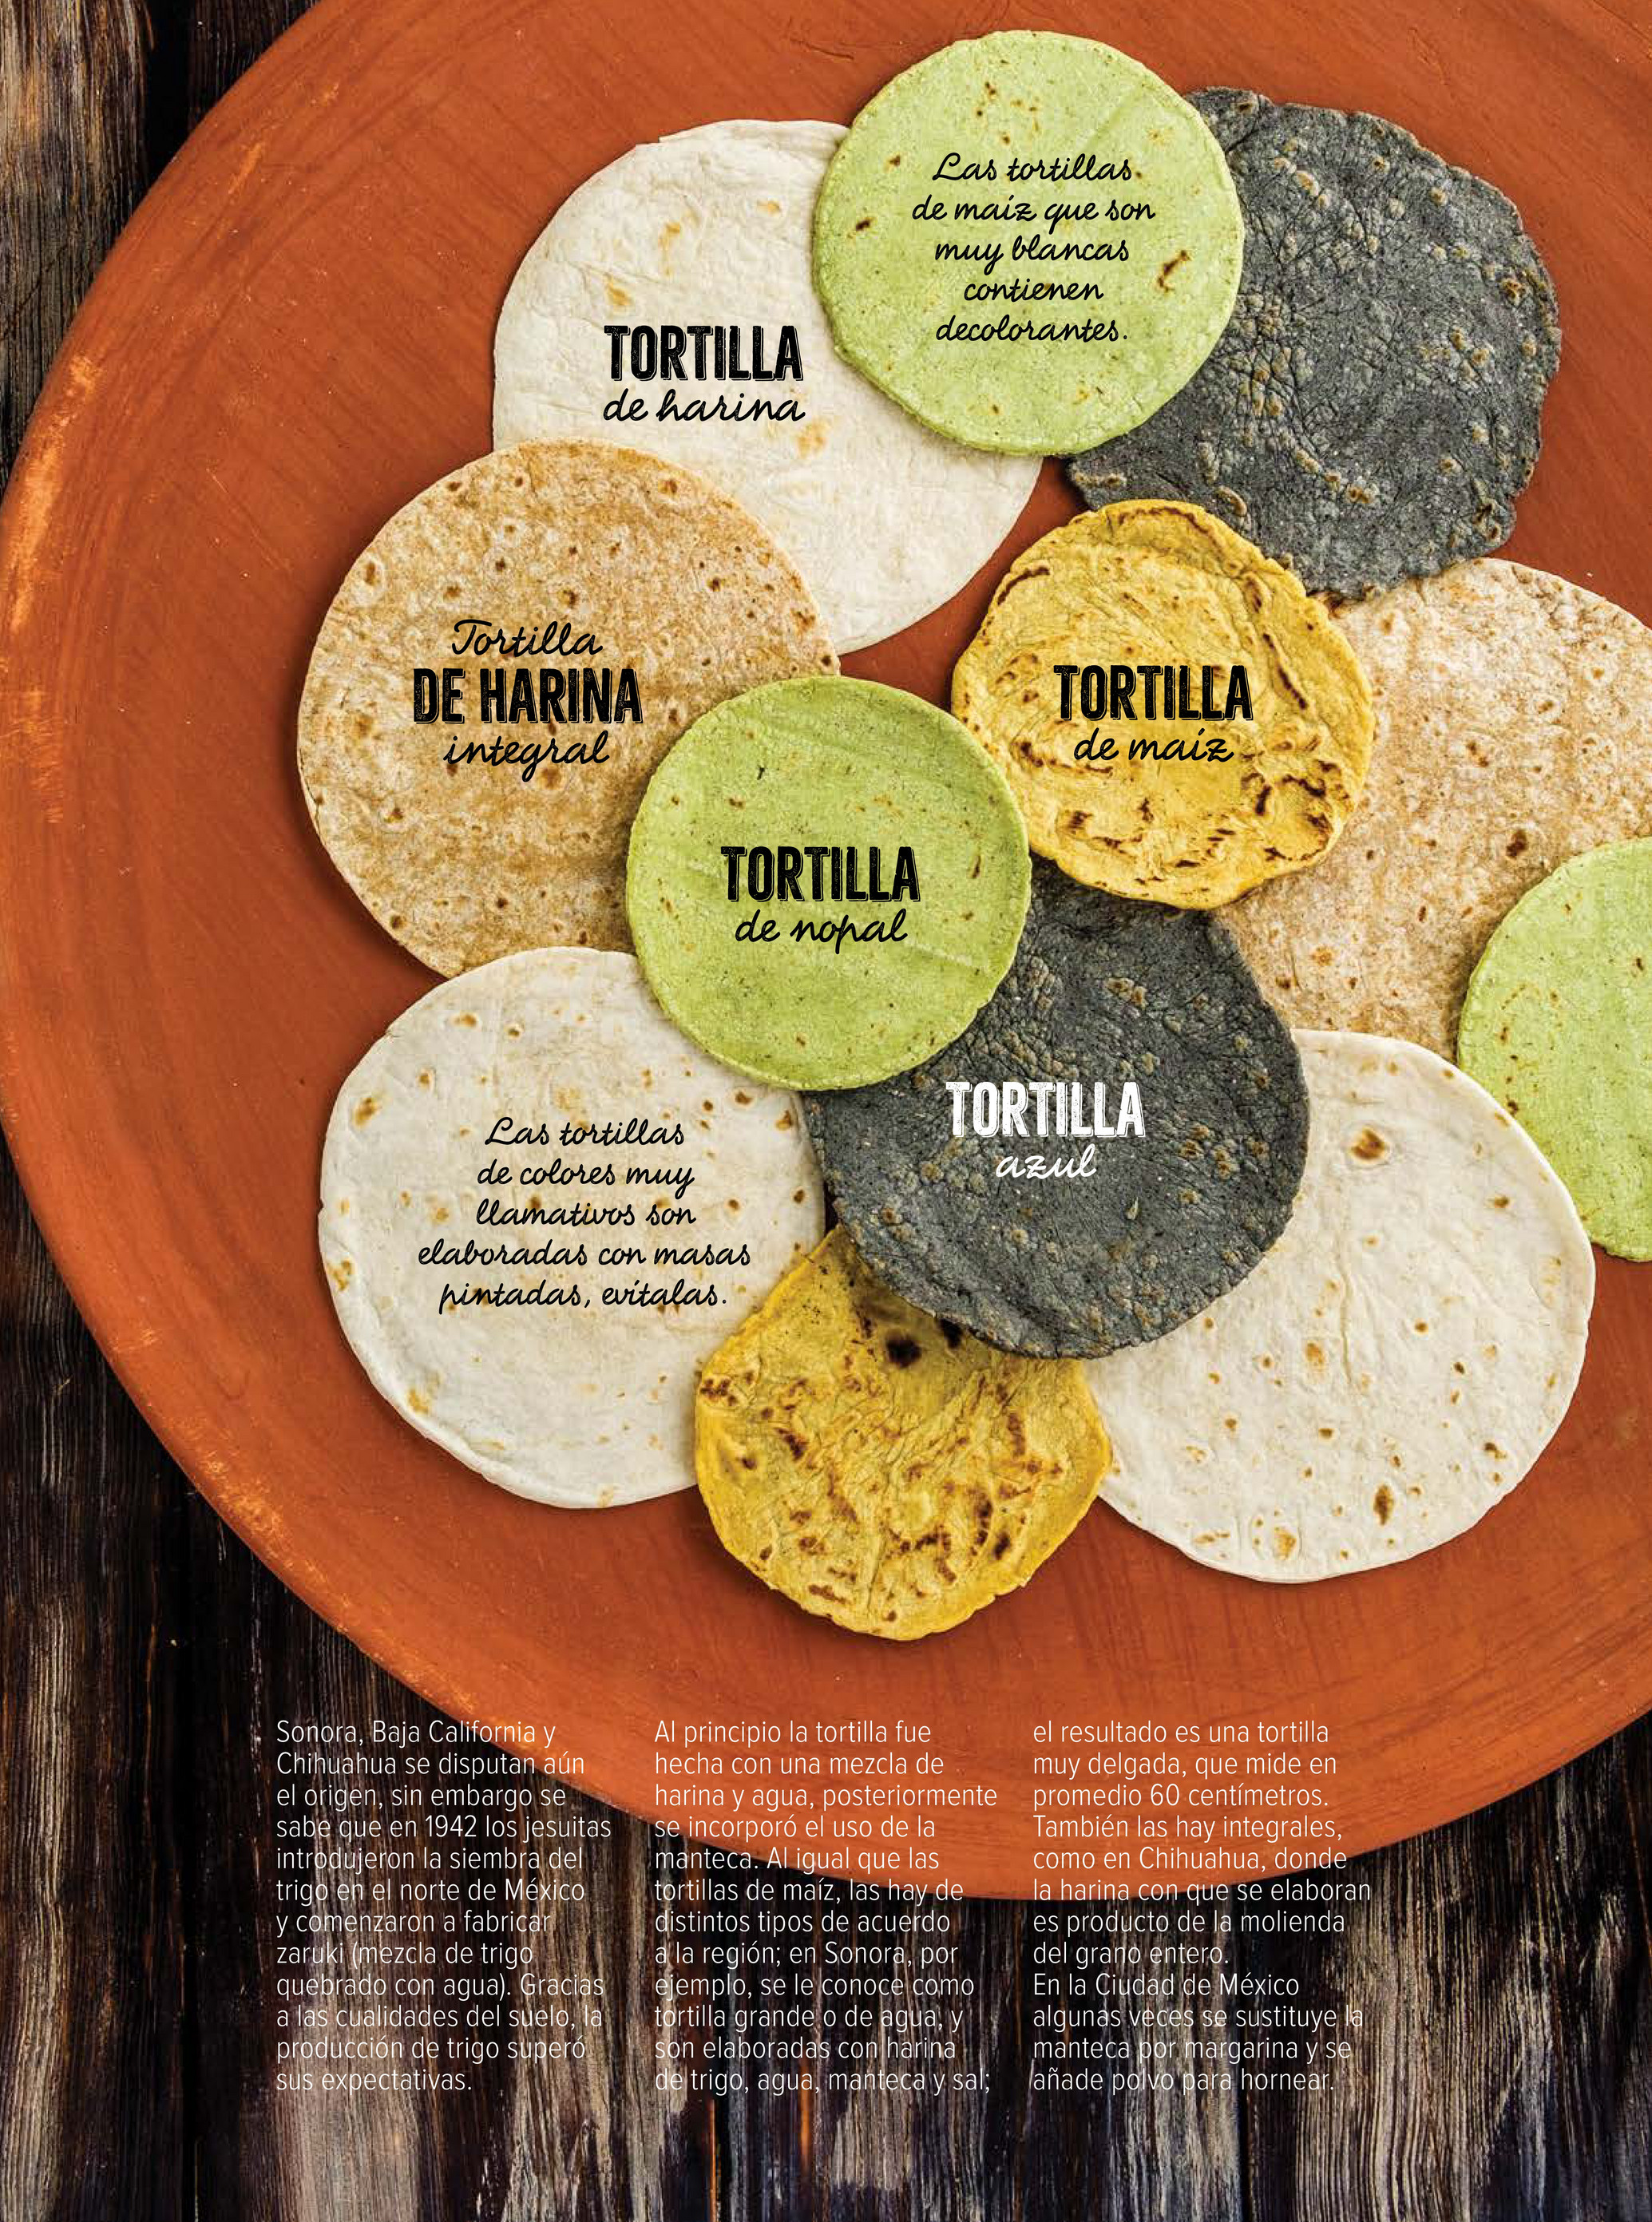 Los tipos de tortillas en México: mucho más que maíz y harina